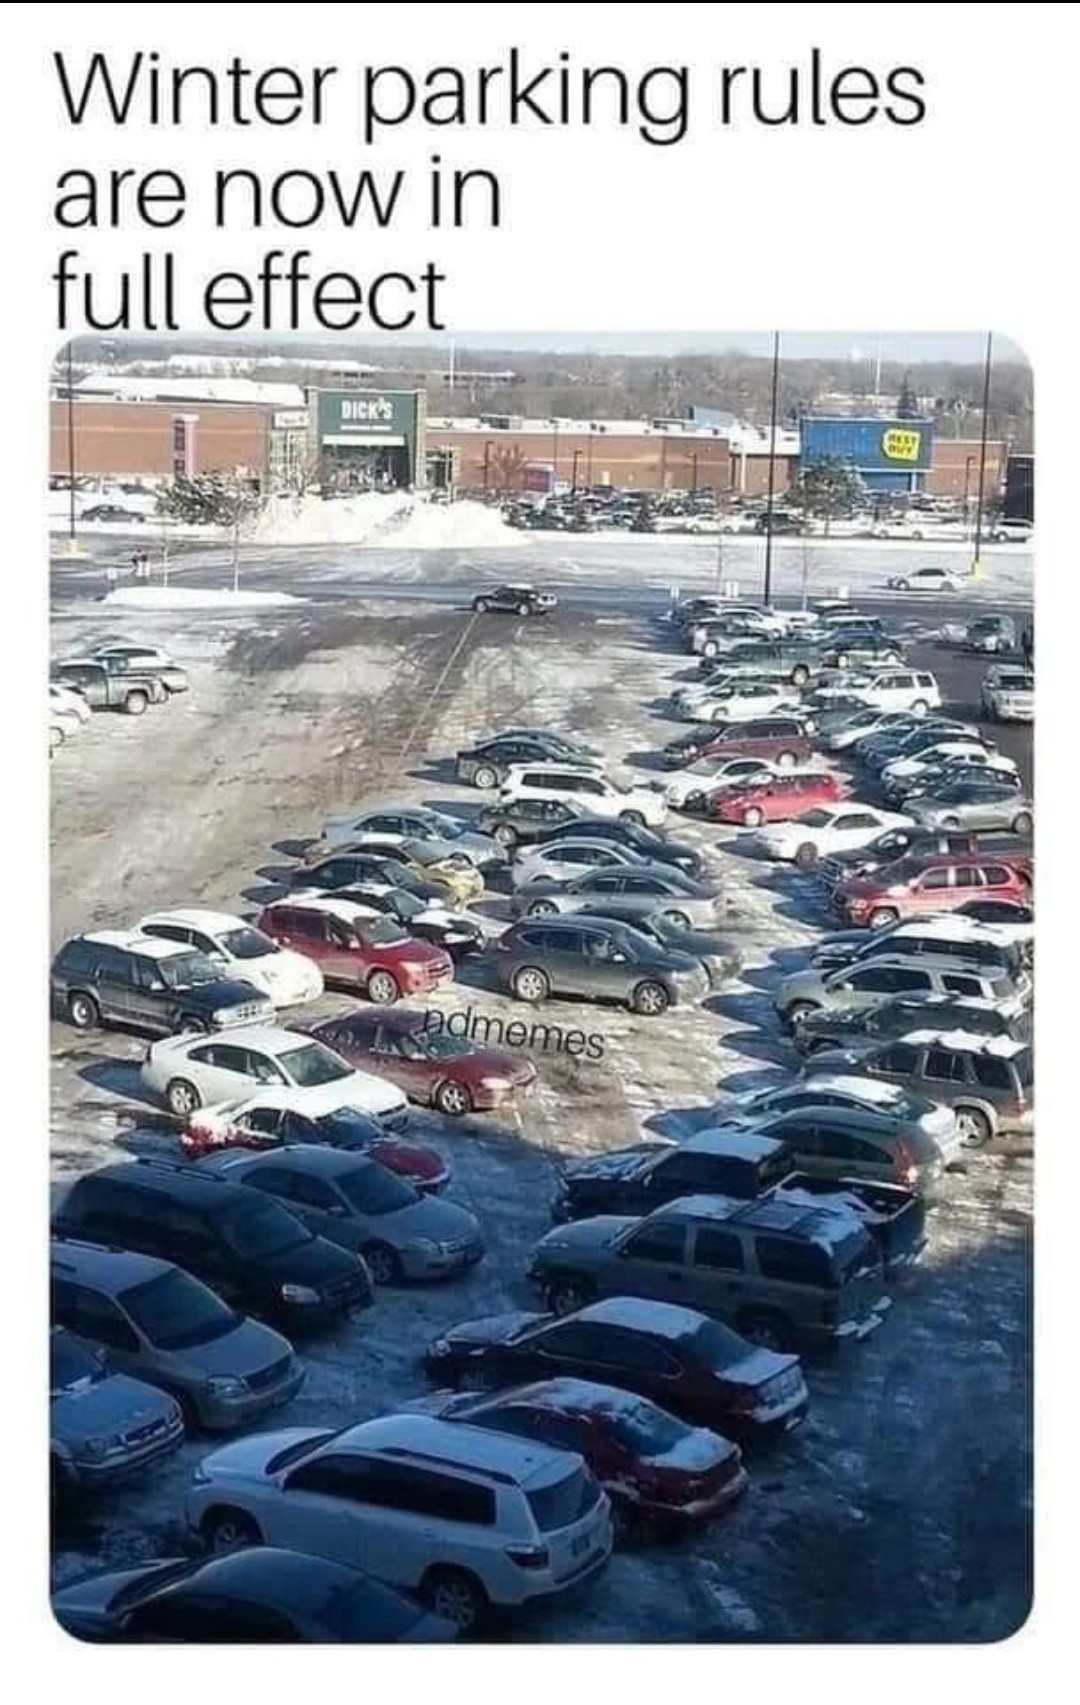 Les parkings d hivers - meme